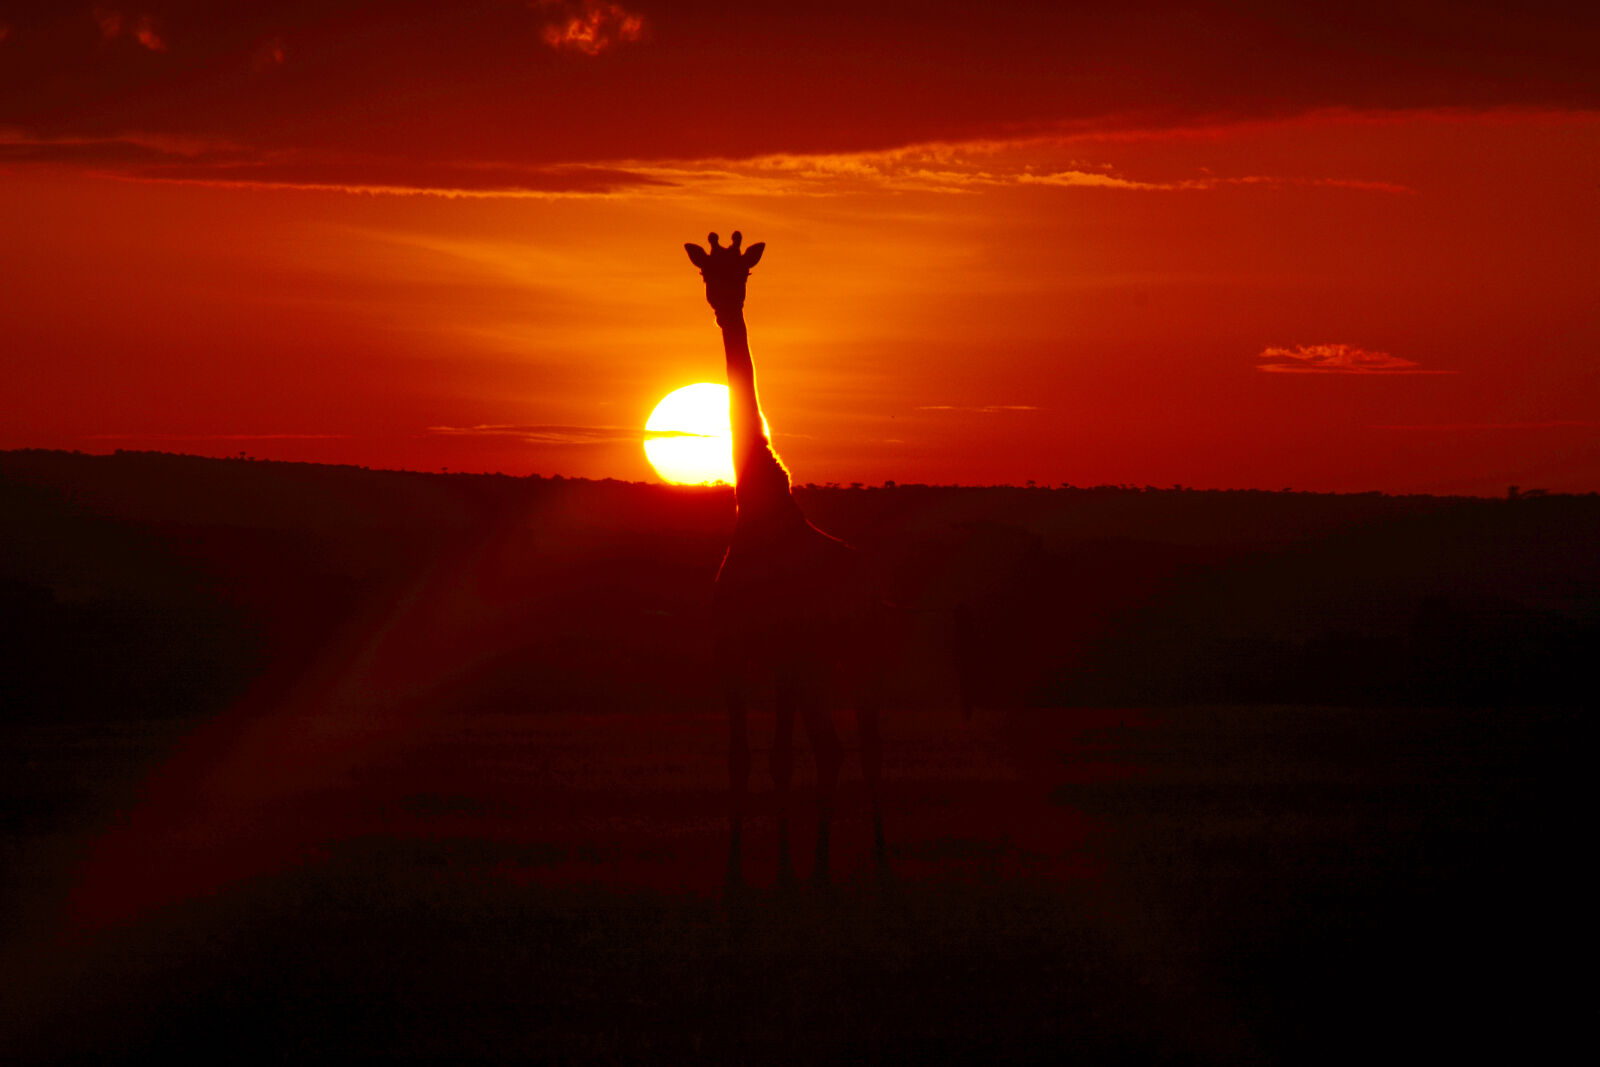 Nikon D5200 sample photo. Giraffe, sunrise photography